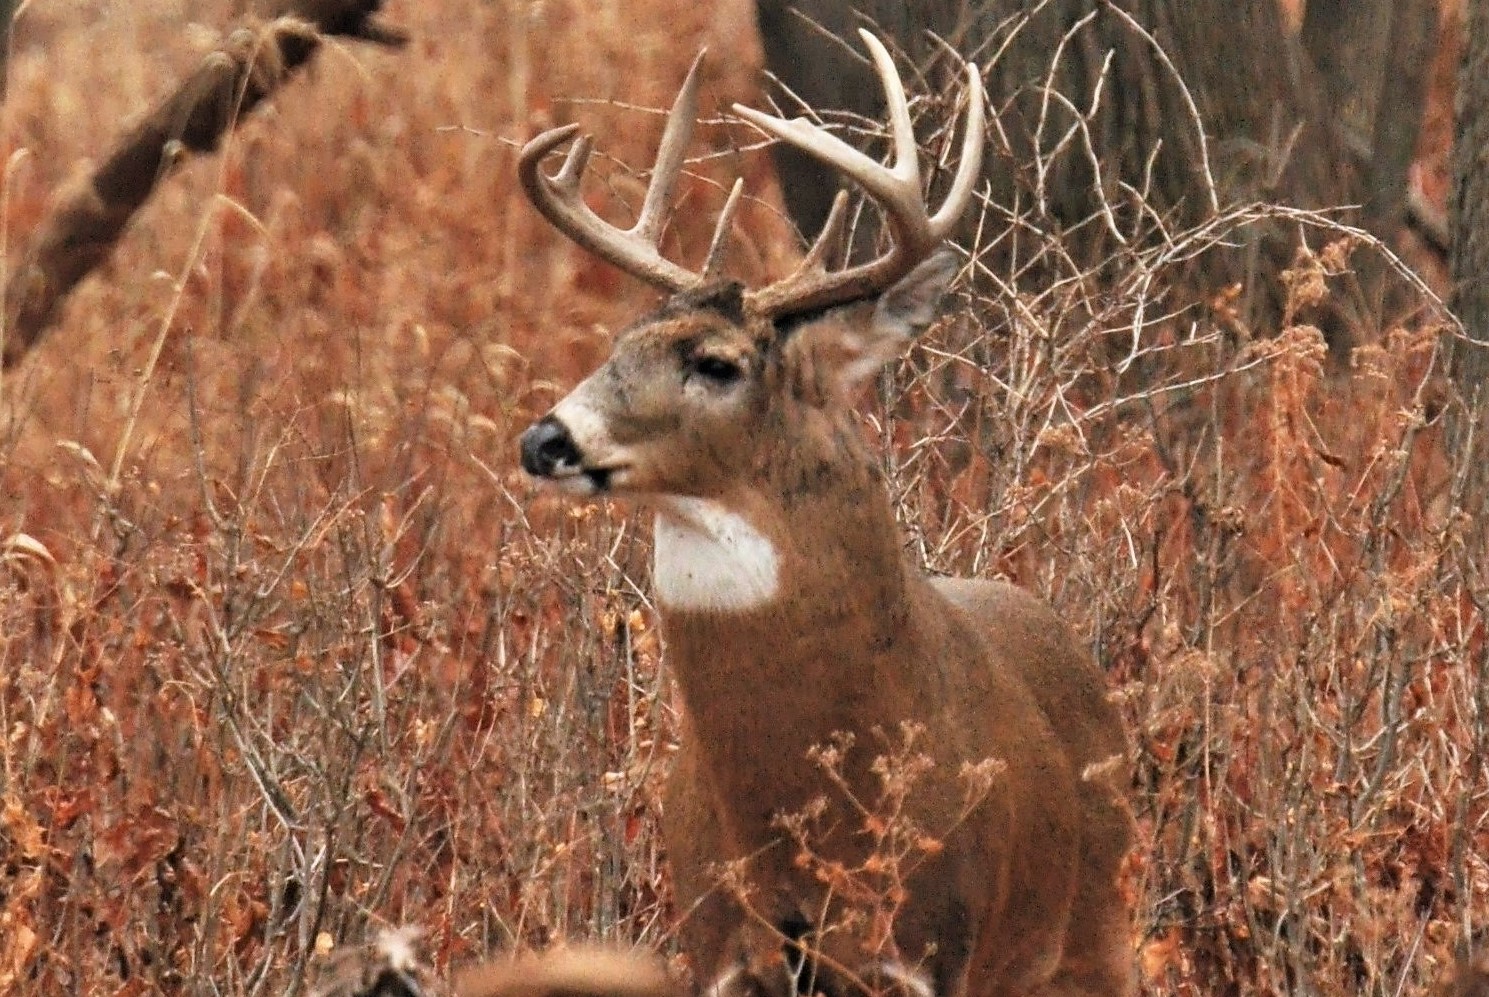 Why we hunt deer is each hunters own decision.